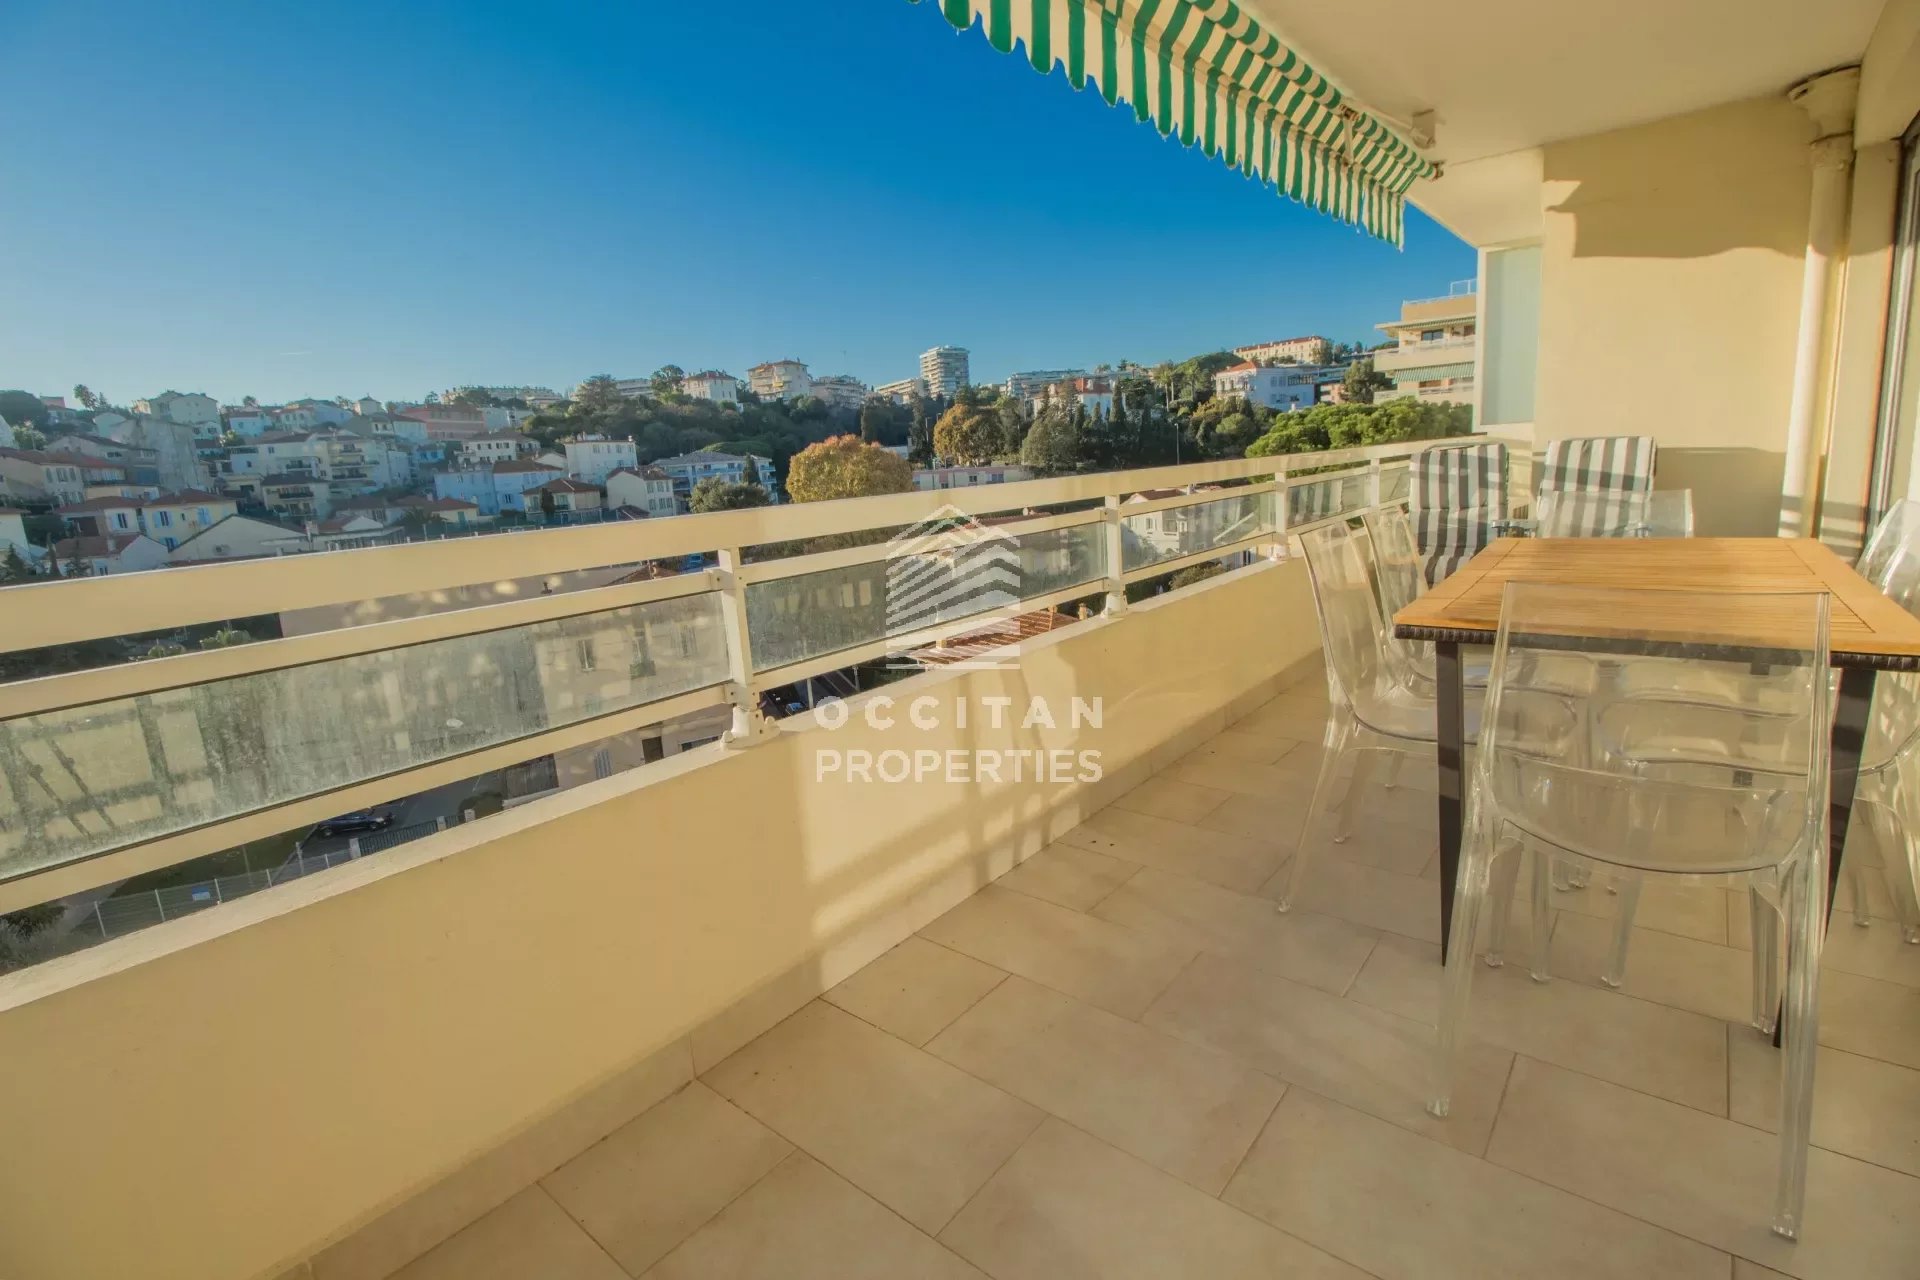 Vente Appartement 93m² 4 Pièces à Cannes (06400) - Occitan Properties